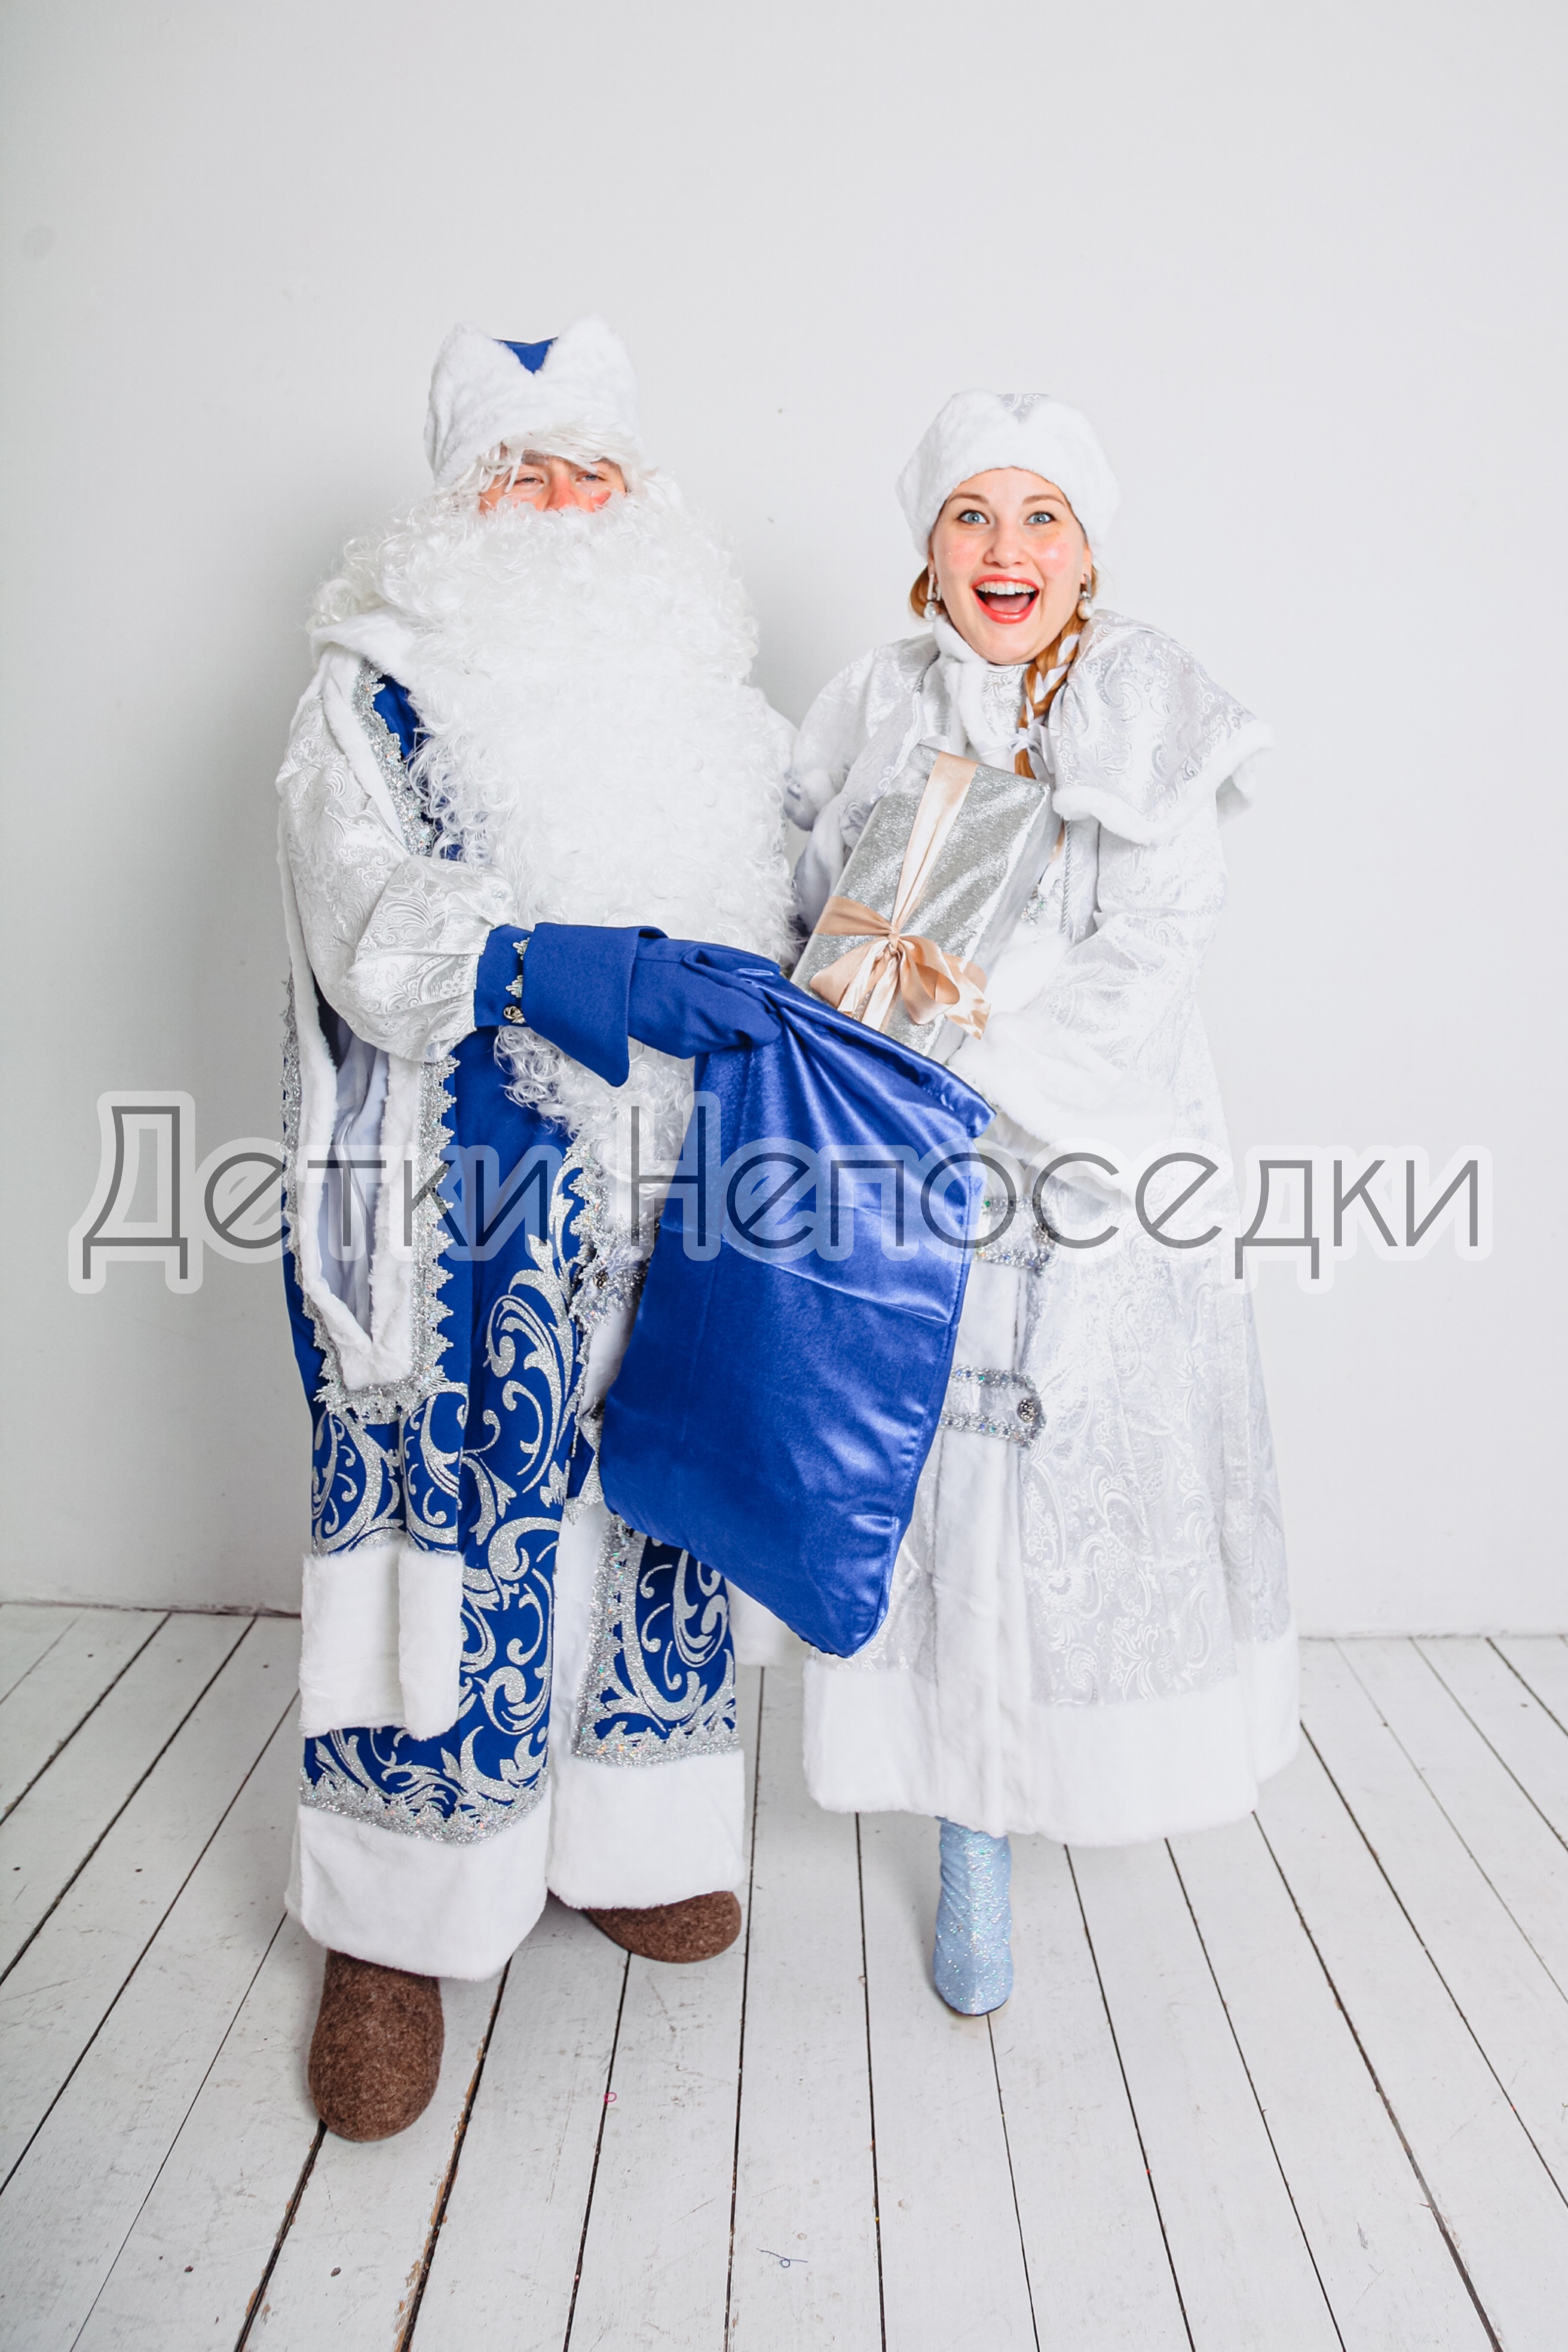 Дед Мороз Екатеринбург на утренник